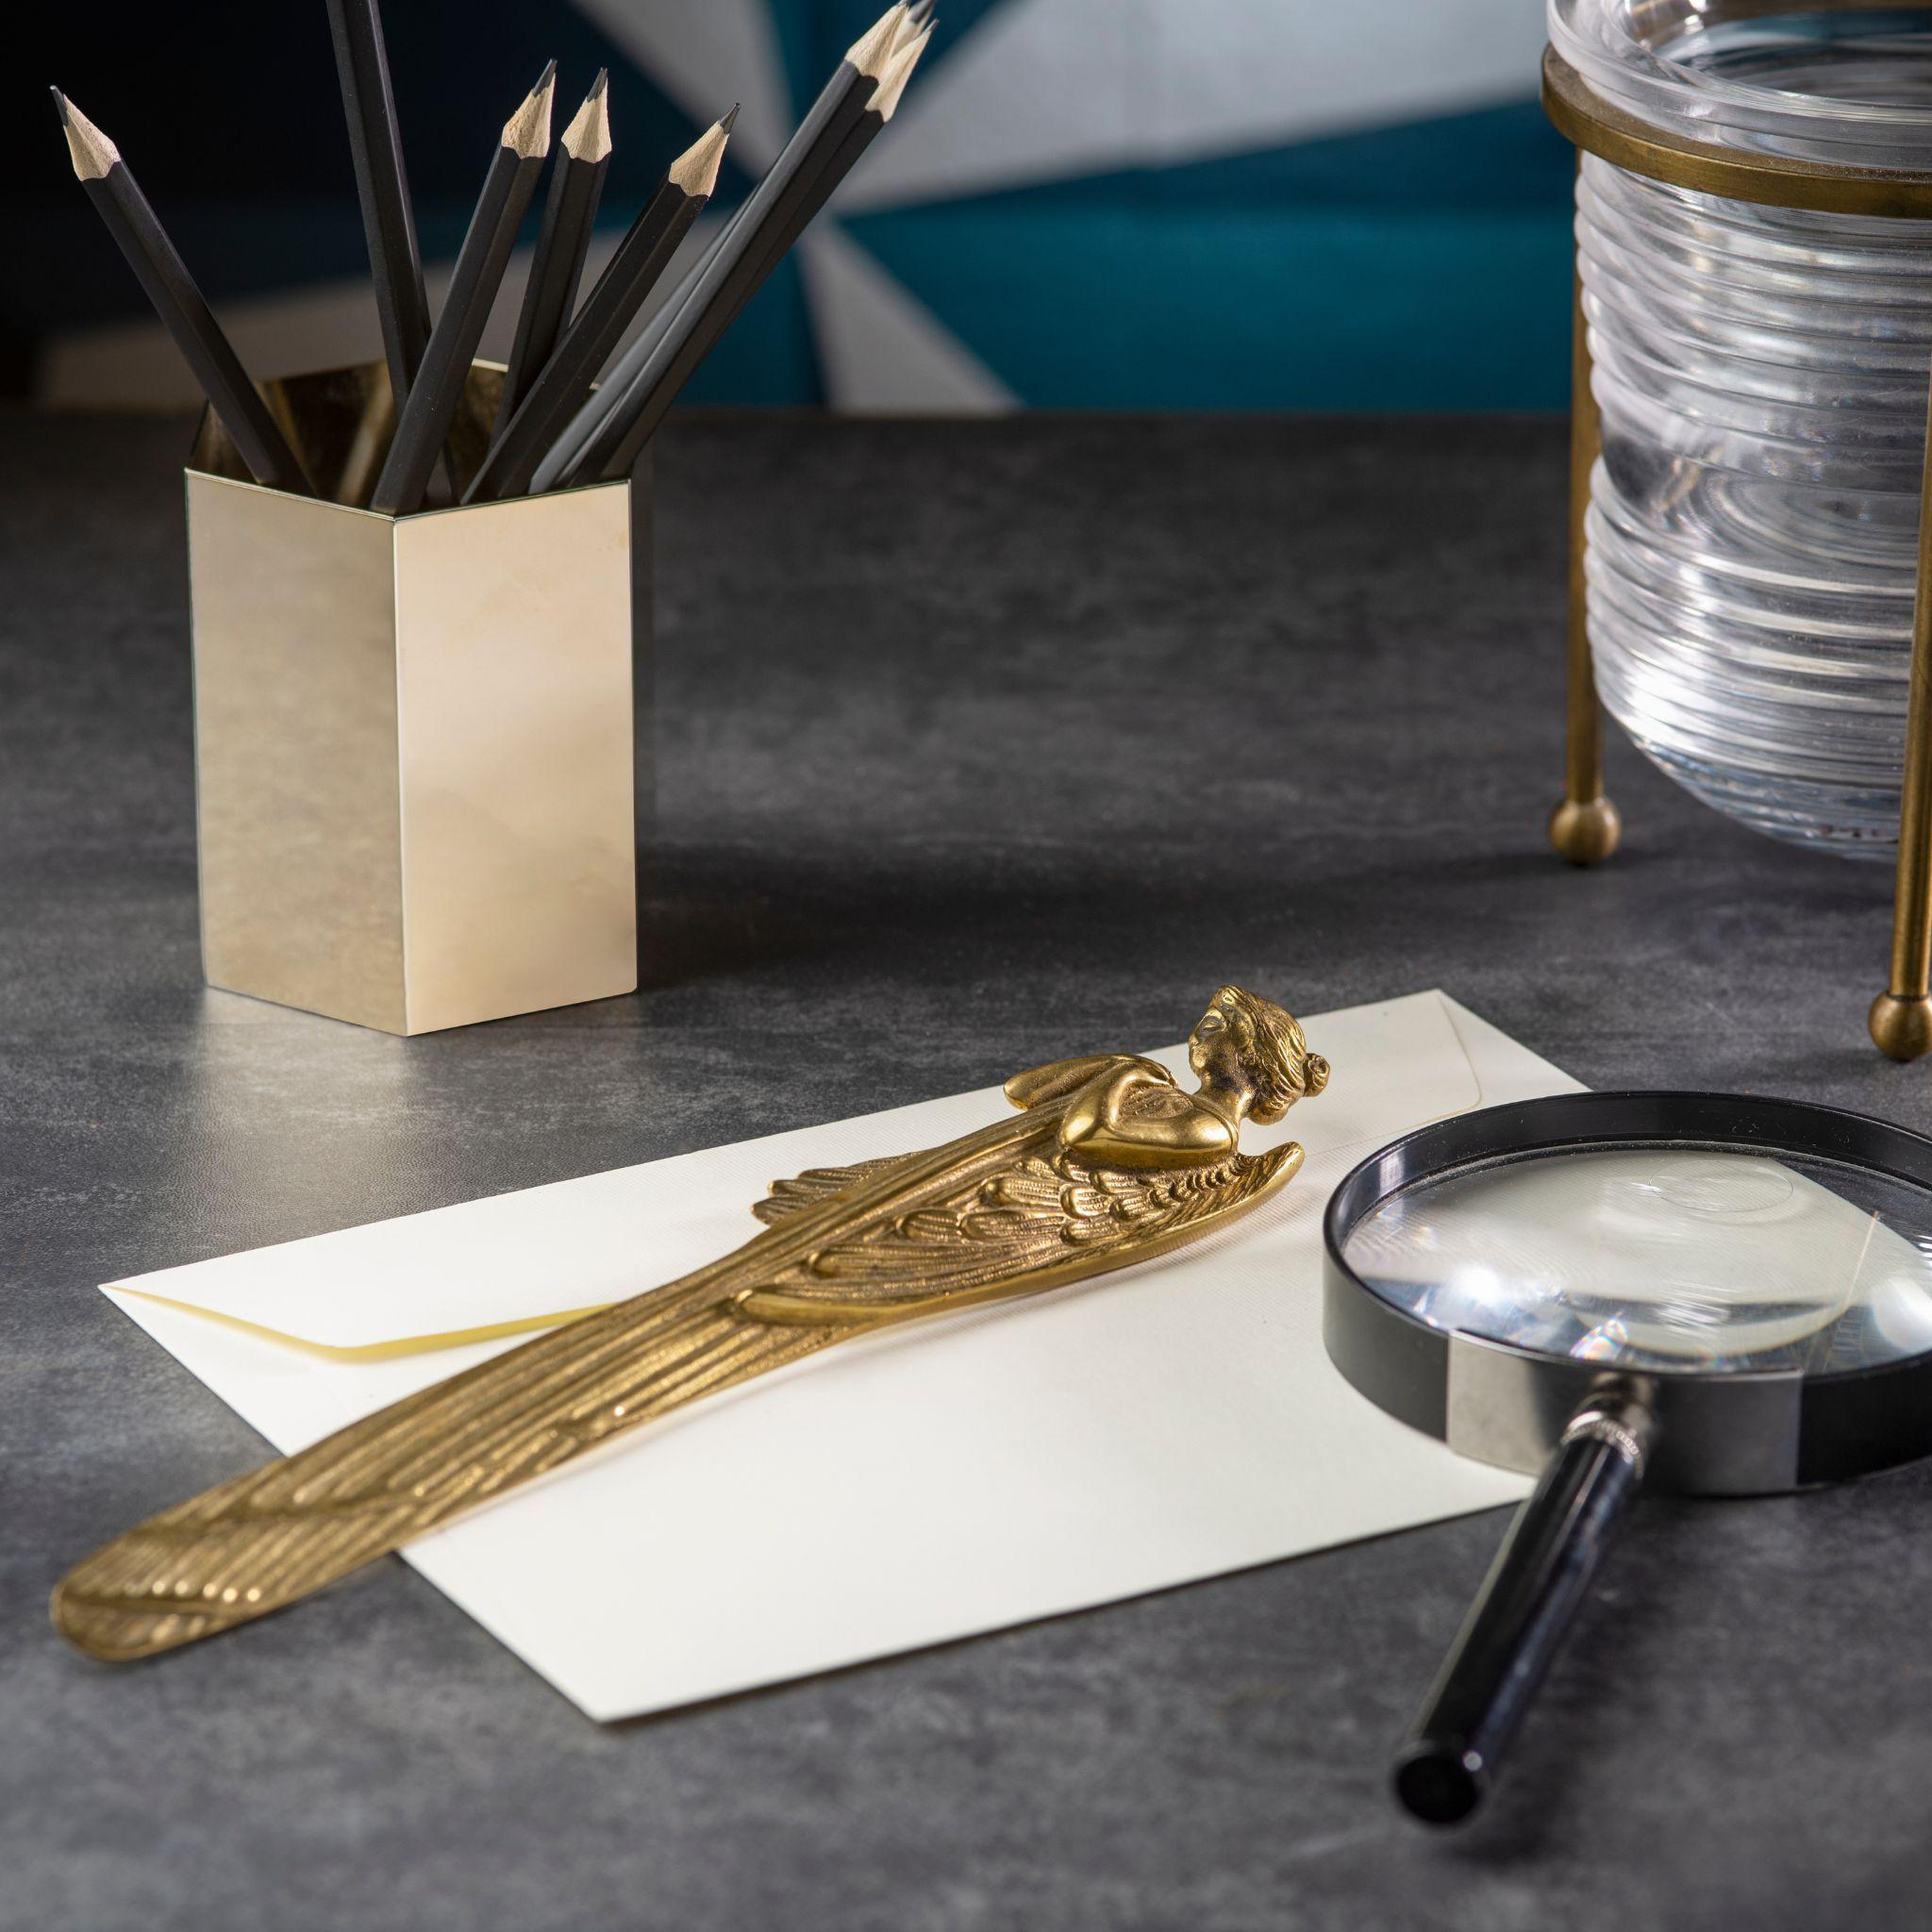 Améliorez votre espace de travail avec notre coupe-papier en bronze coulé en forme d'angle. Fabriqué en bronze de haute qualité, son design unique et élégant ajoute de la sophistication à tout bureau ou maison. Doté d'une lame tranchante, il est